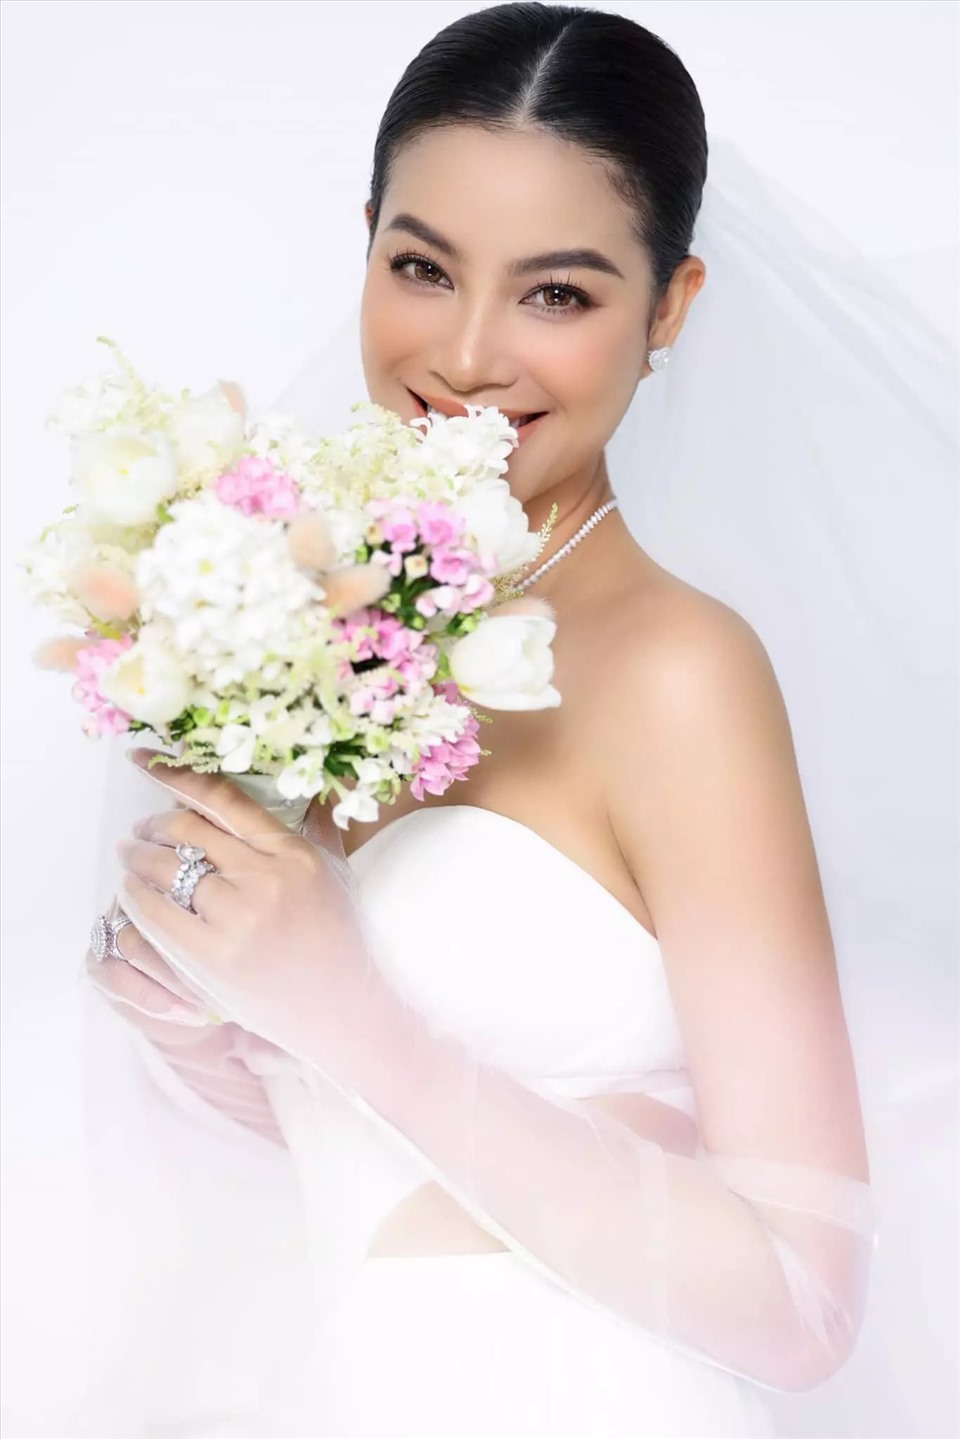 น.ส. Pham Huong ดูสดใสในการถ่ายภาพงานแต่งงานล่าสุด  รูปถ่าย: CNVC